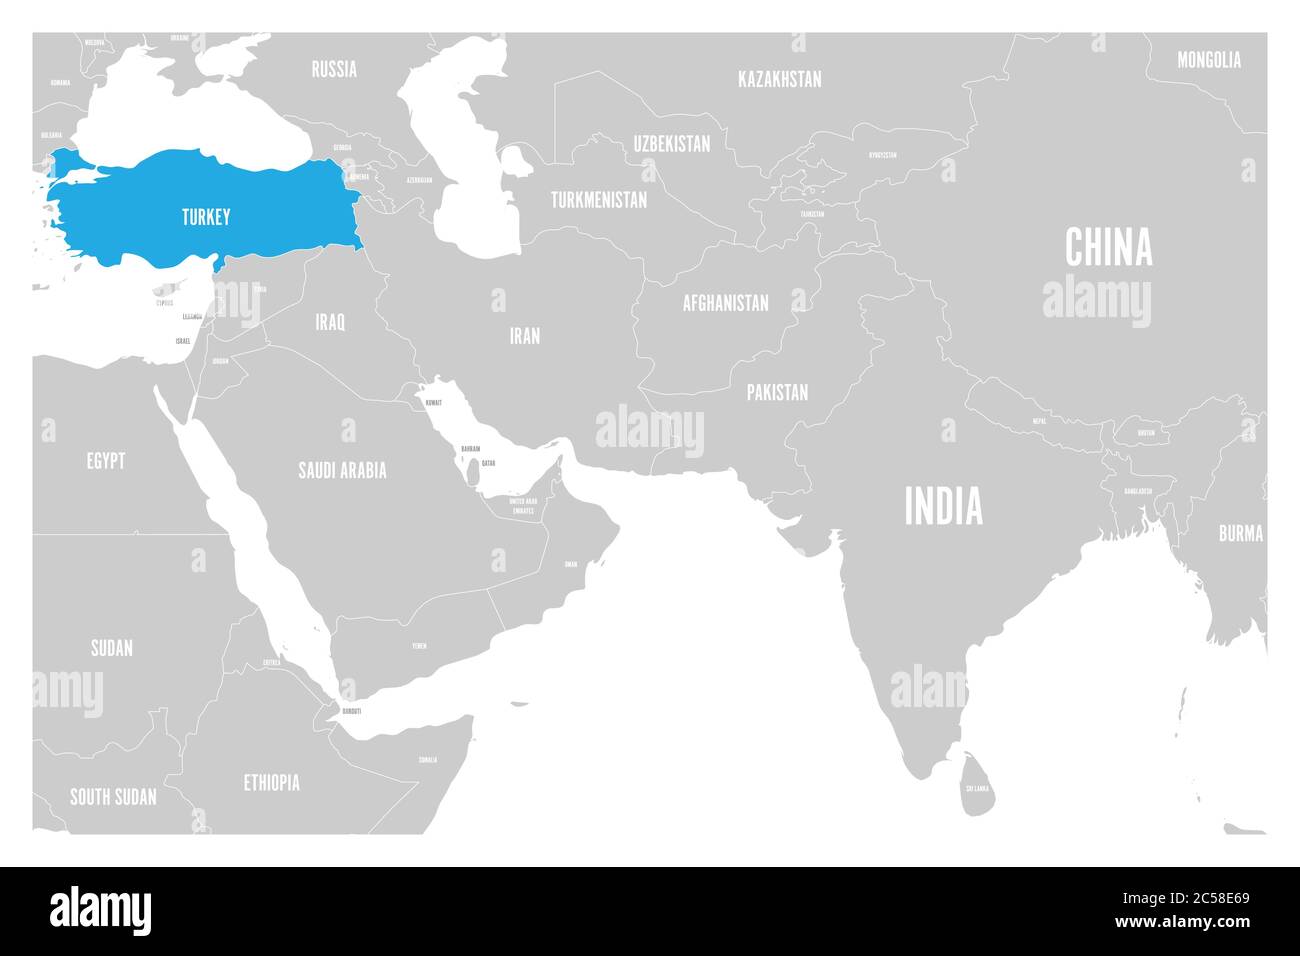 Türkei blau markiert in der politischen Karte von Südasien und dem Nahen Osten. Einfache flache Vektorkarte. Stock Vektor